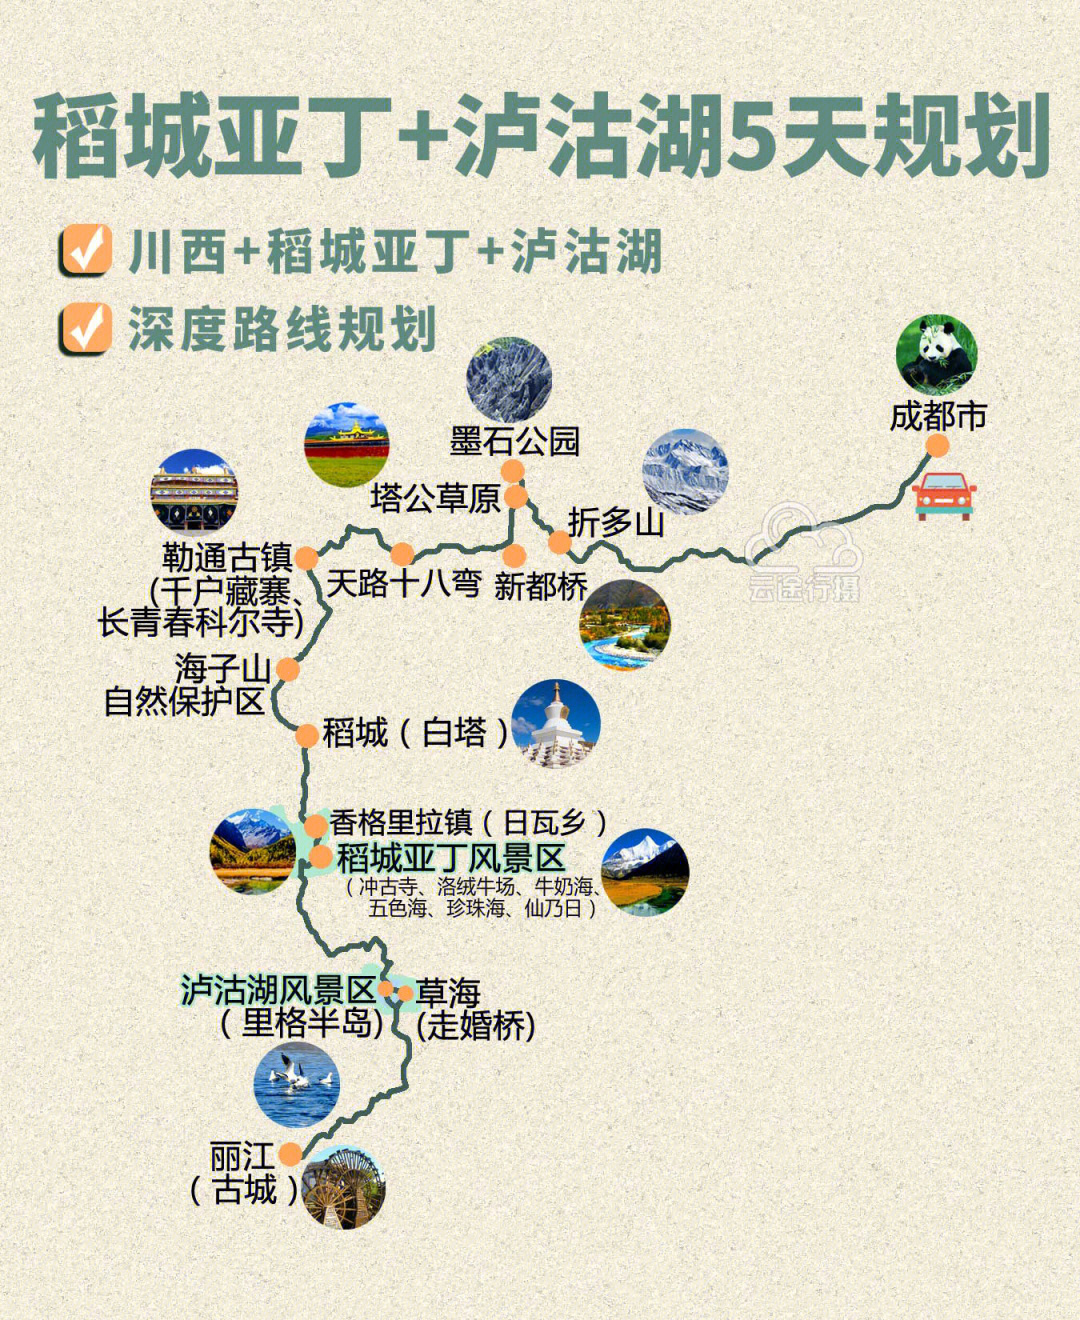 泸沽湖四川云南分界图图片